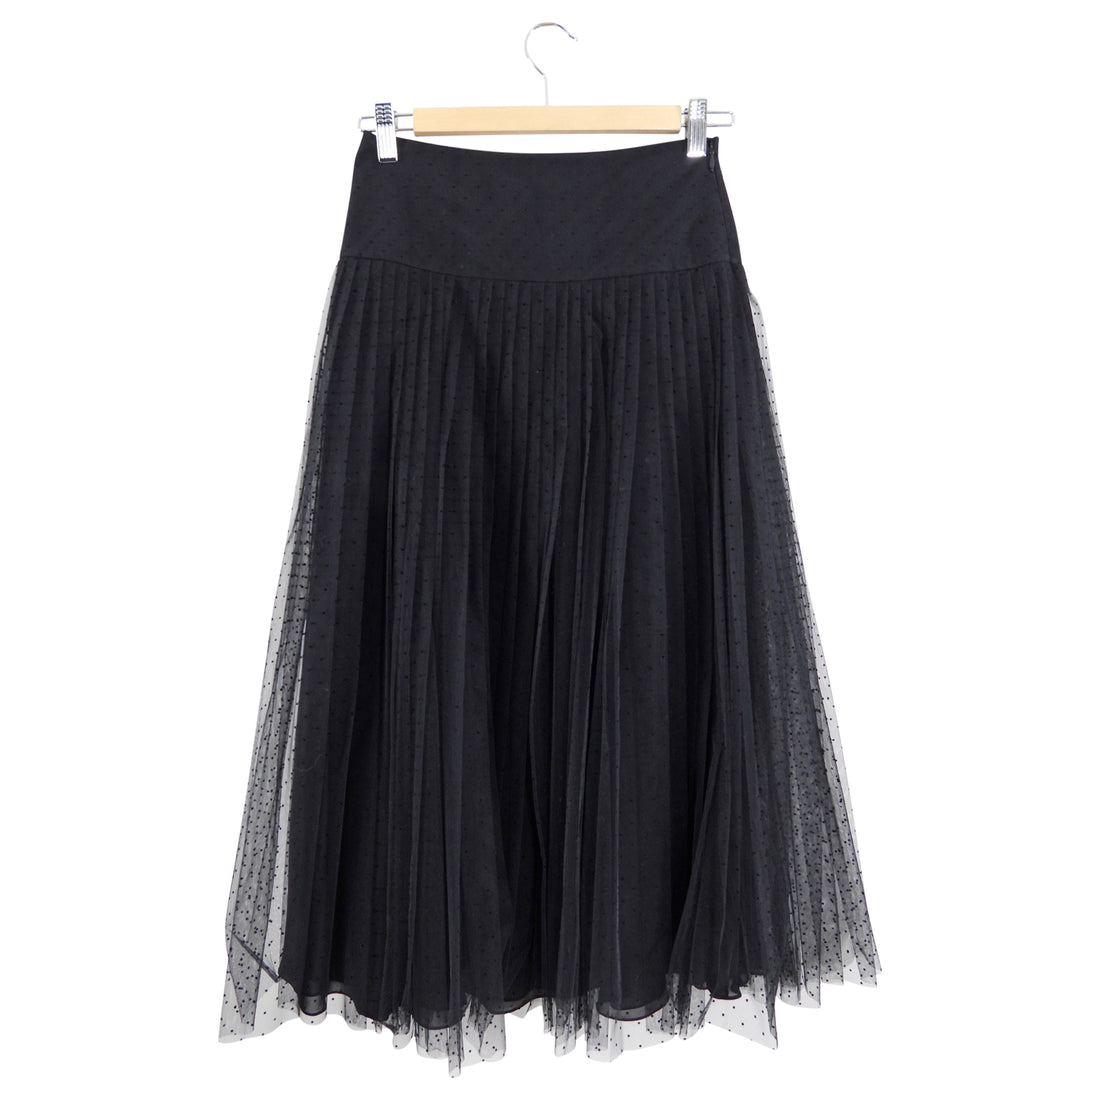 Christian Dior Black Tulle Net Skirt - FR36 / USA 4